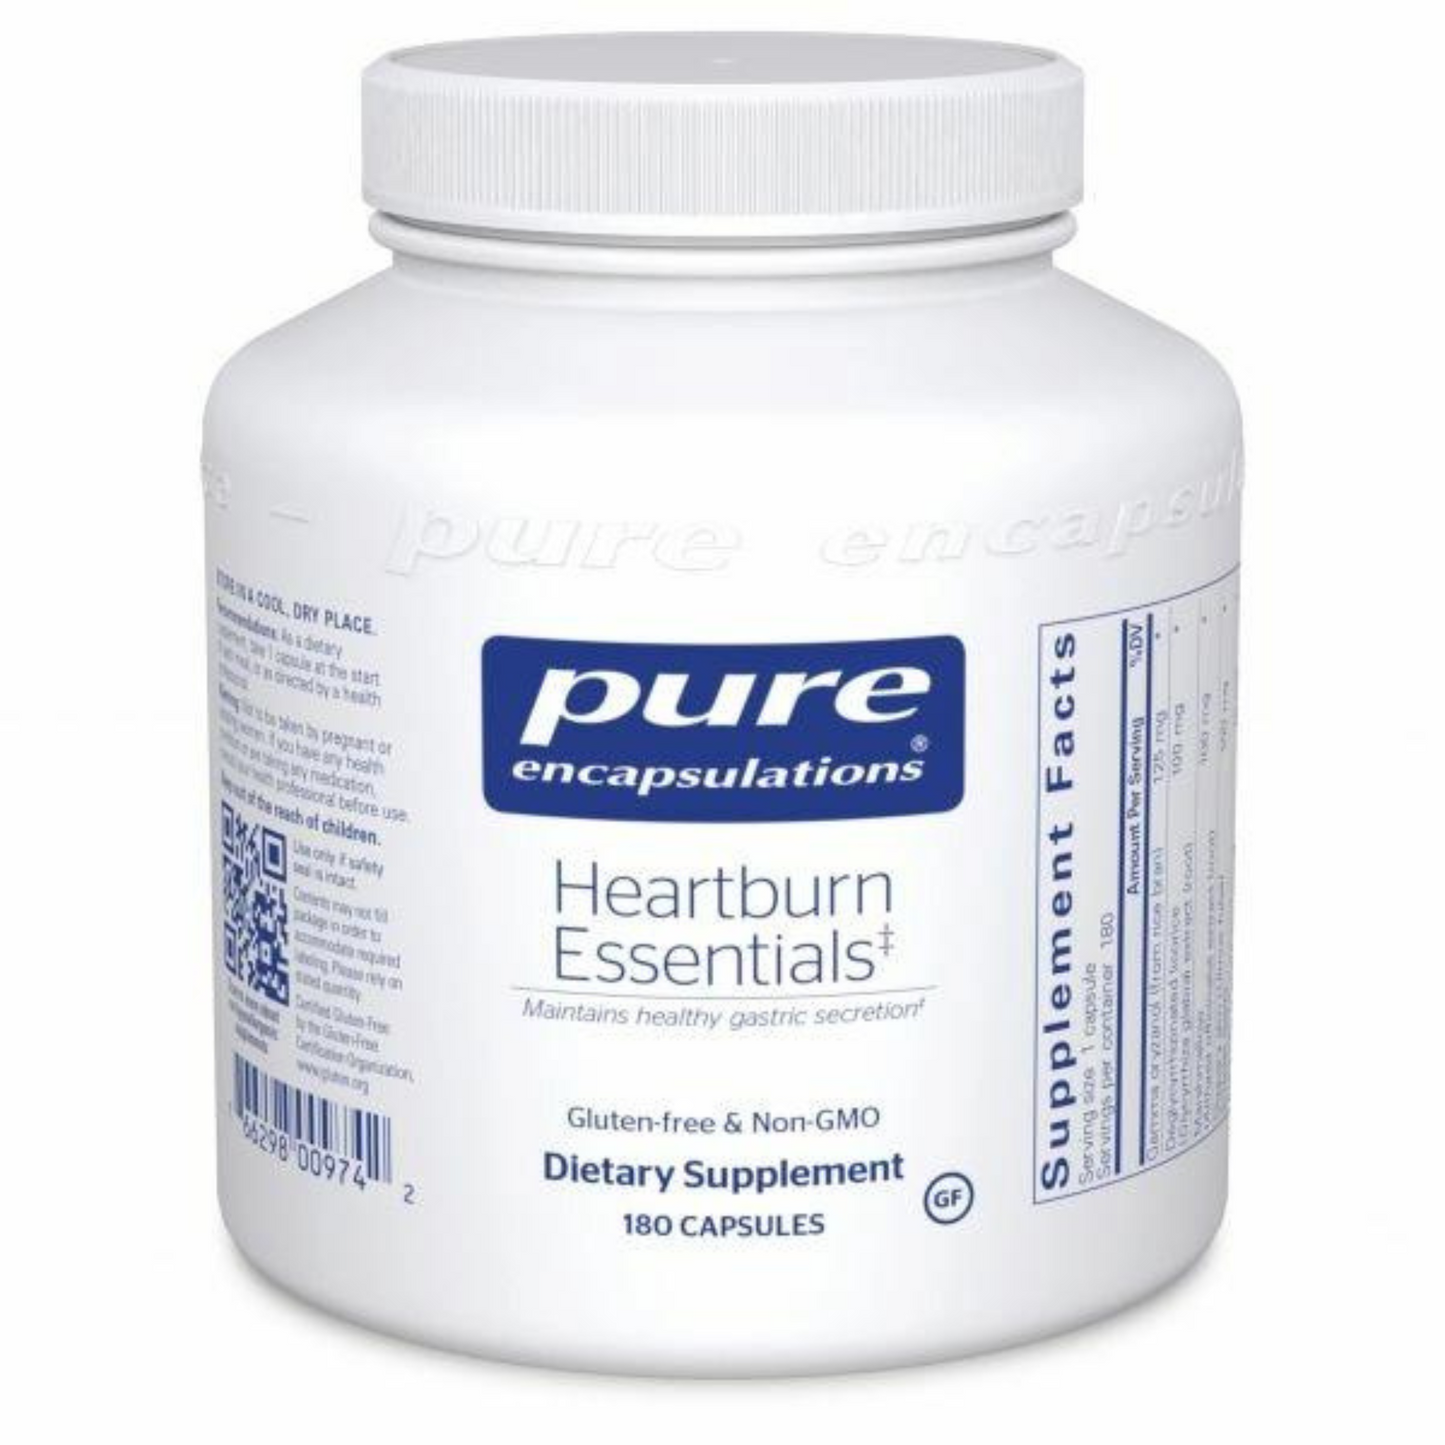 Primary Image of Heartburn Essentials Capsules (180 count)